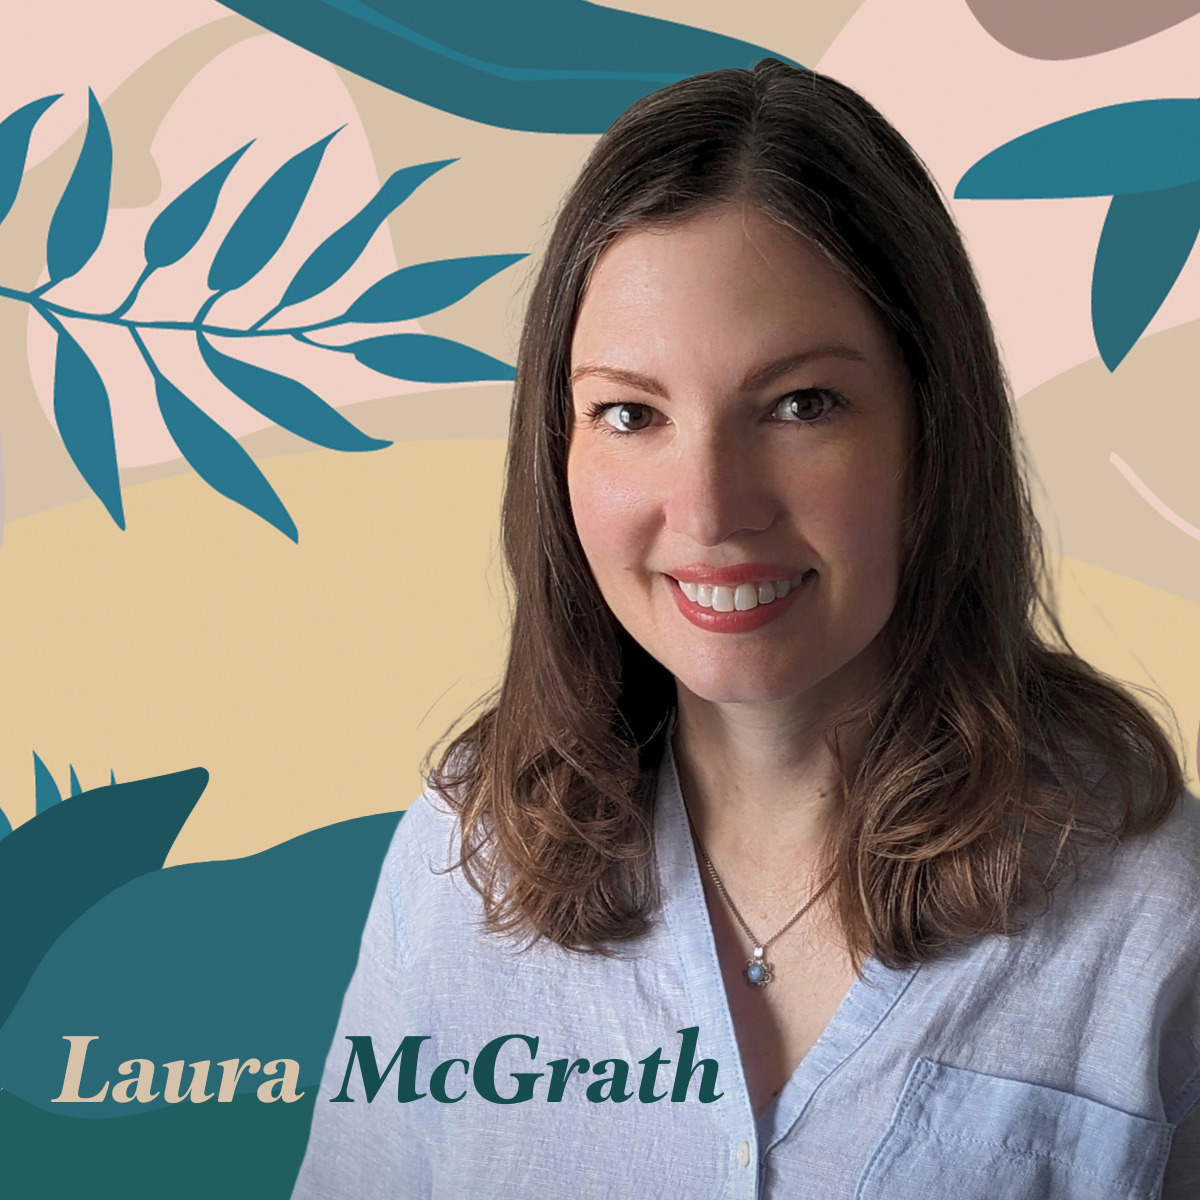 Laura McGrath